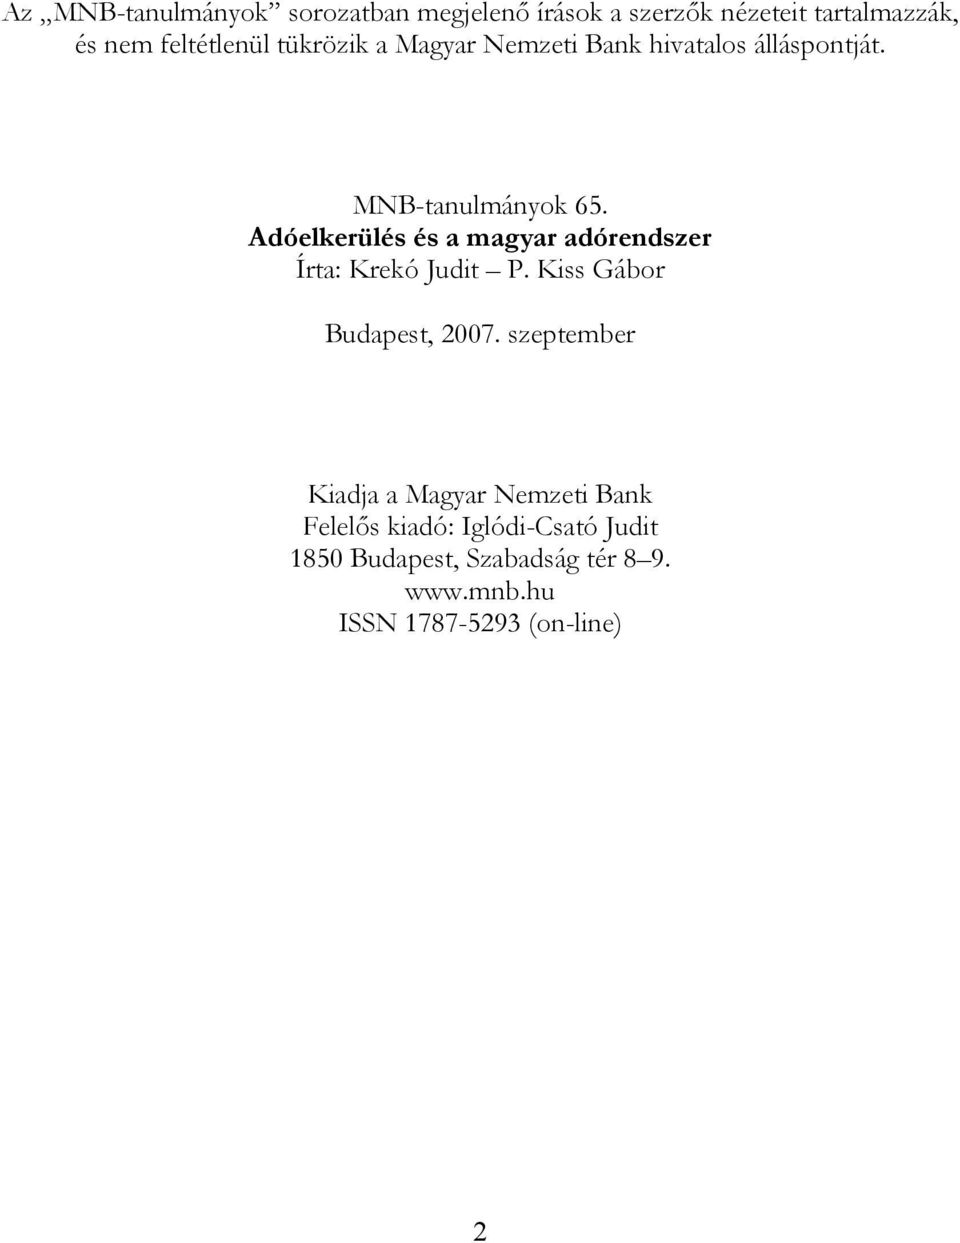 Adóelkerülés és a magyar adórendszer Írta: Krekó Judit P. Kiss Gábor Budapest, 2007.